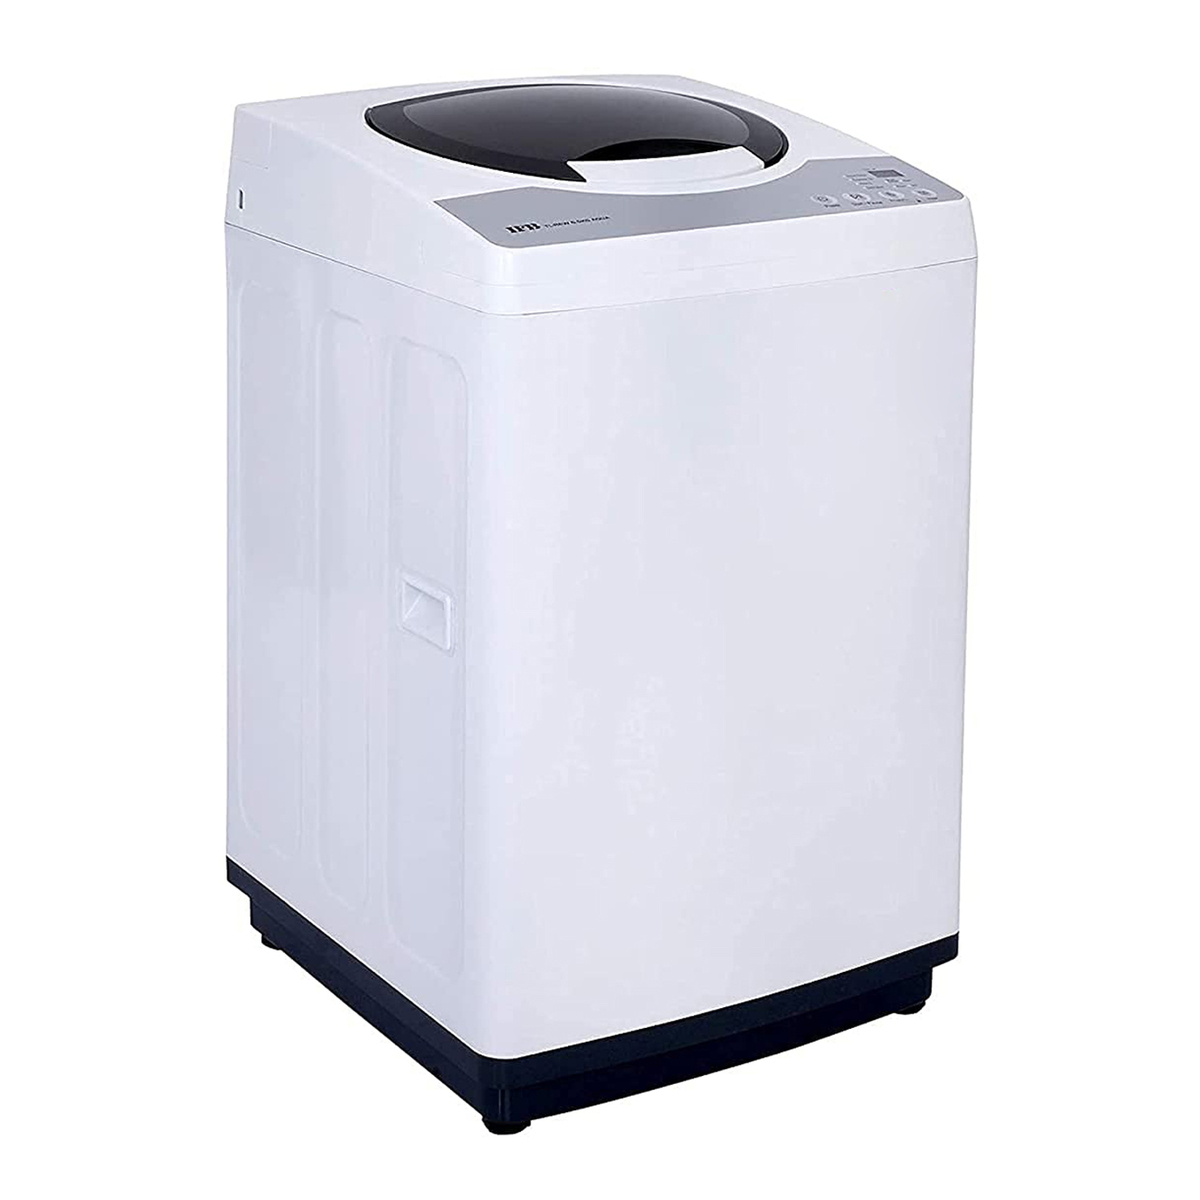 IFB TL-REW Aqua Fully Automatic Washing Machine 6.5kg